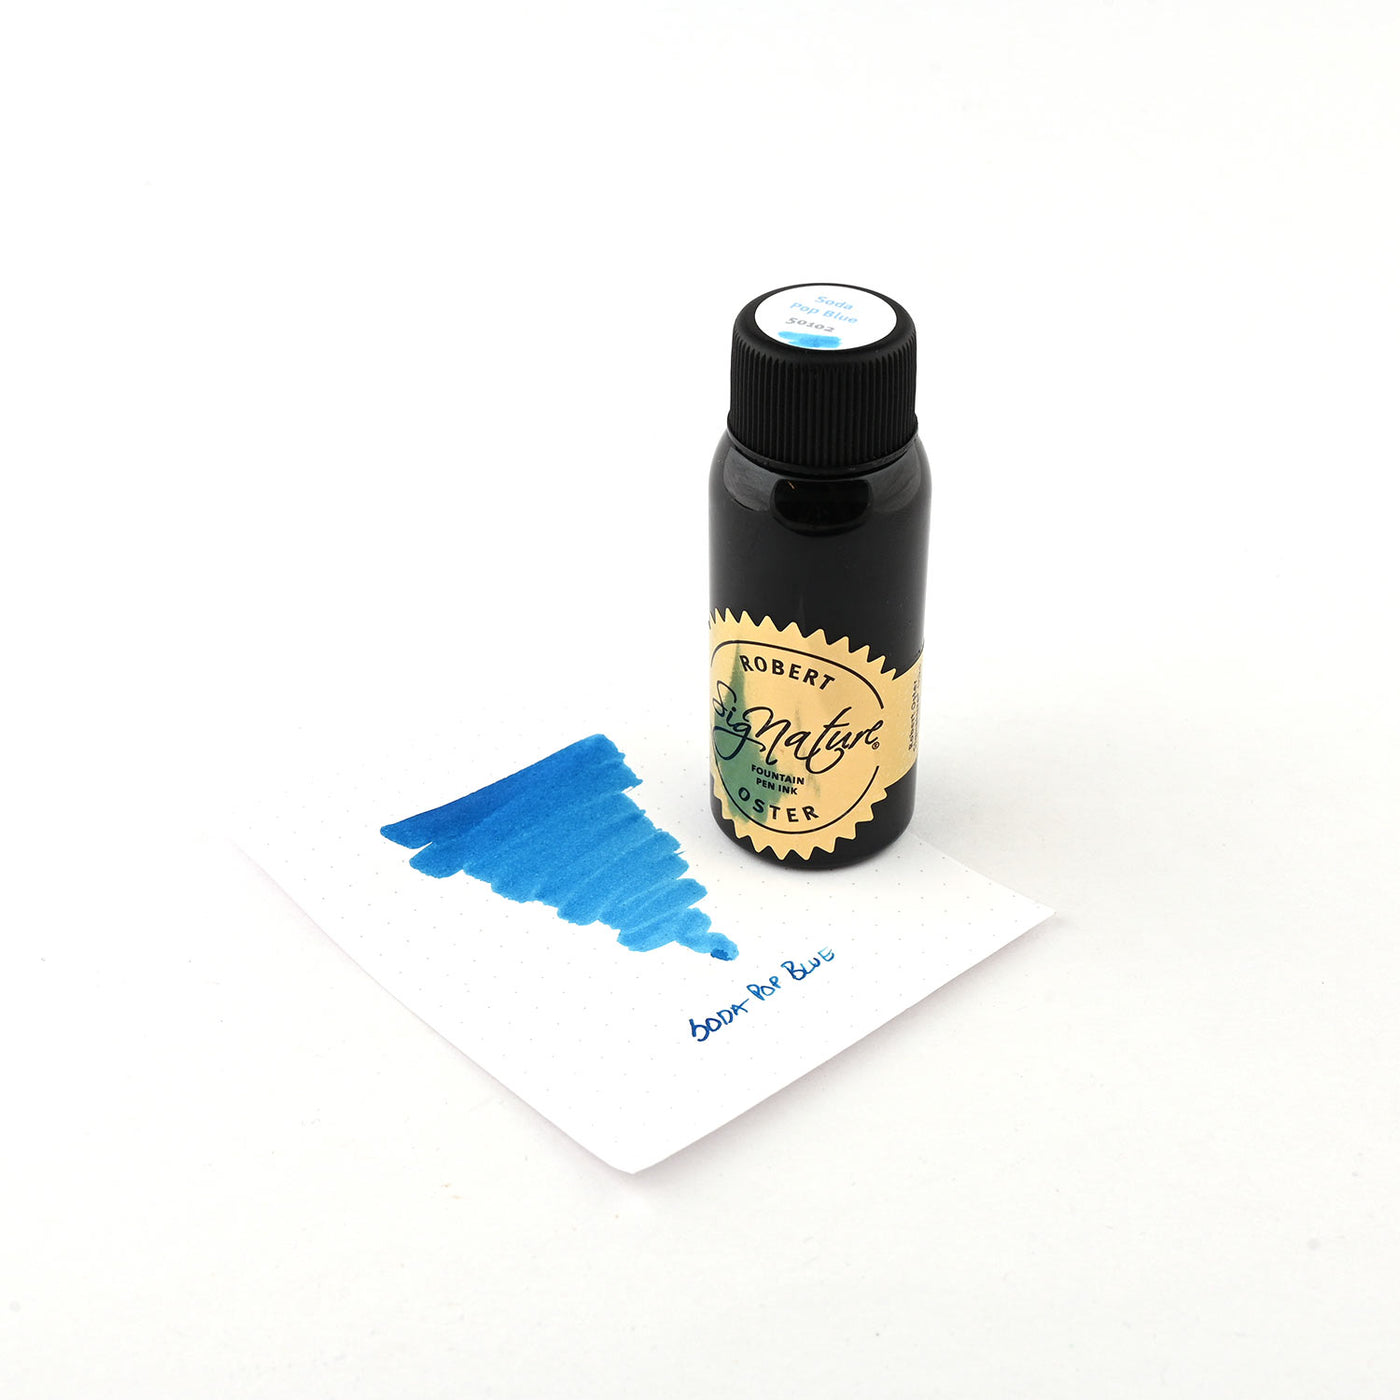 Robert Oster Signature Ink Soda Pop Blue - 50ml 2